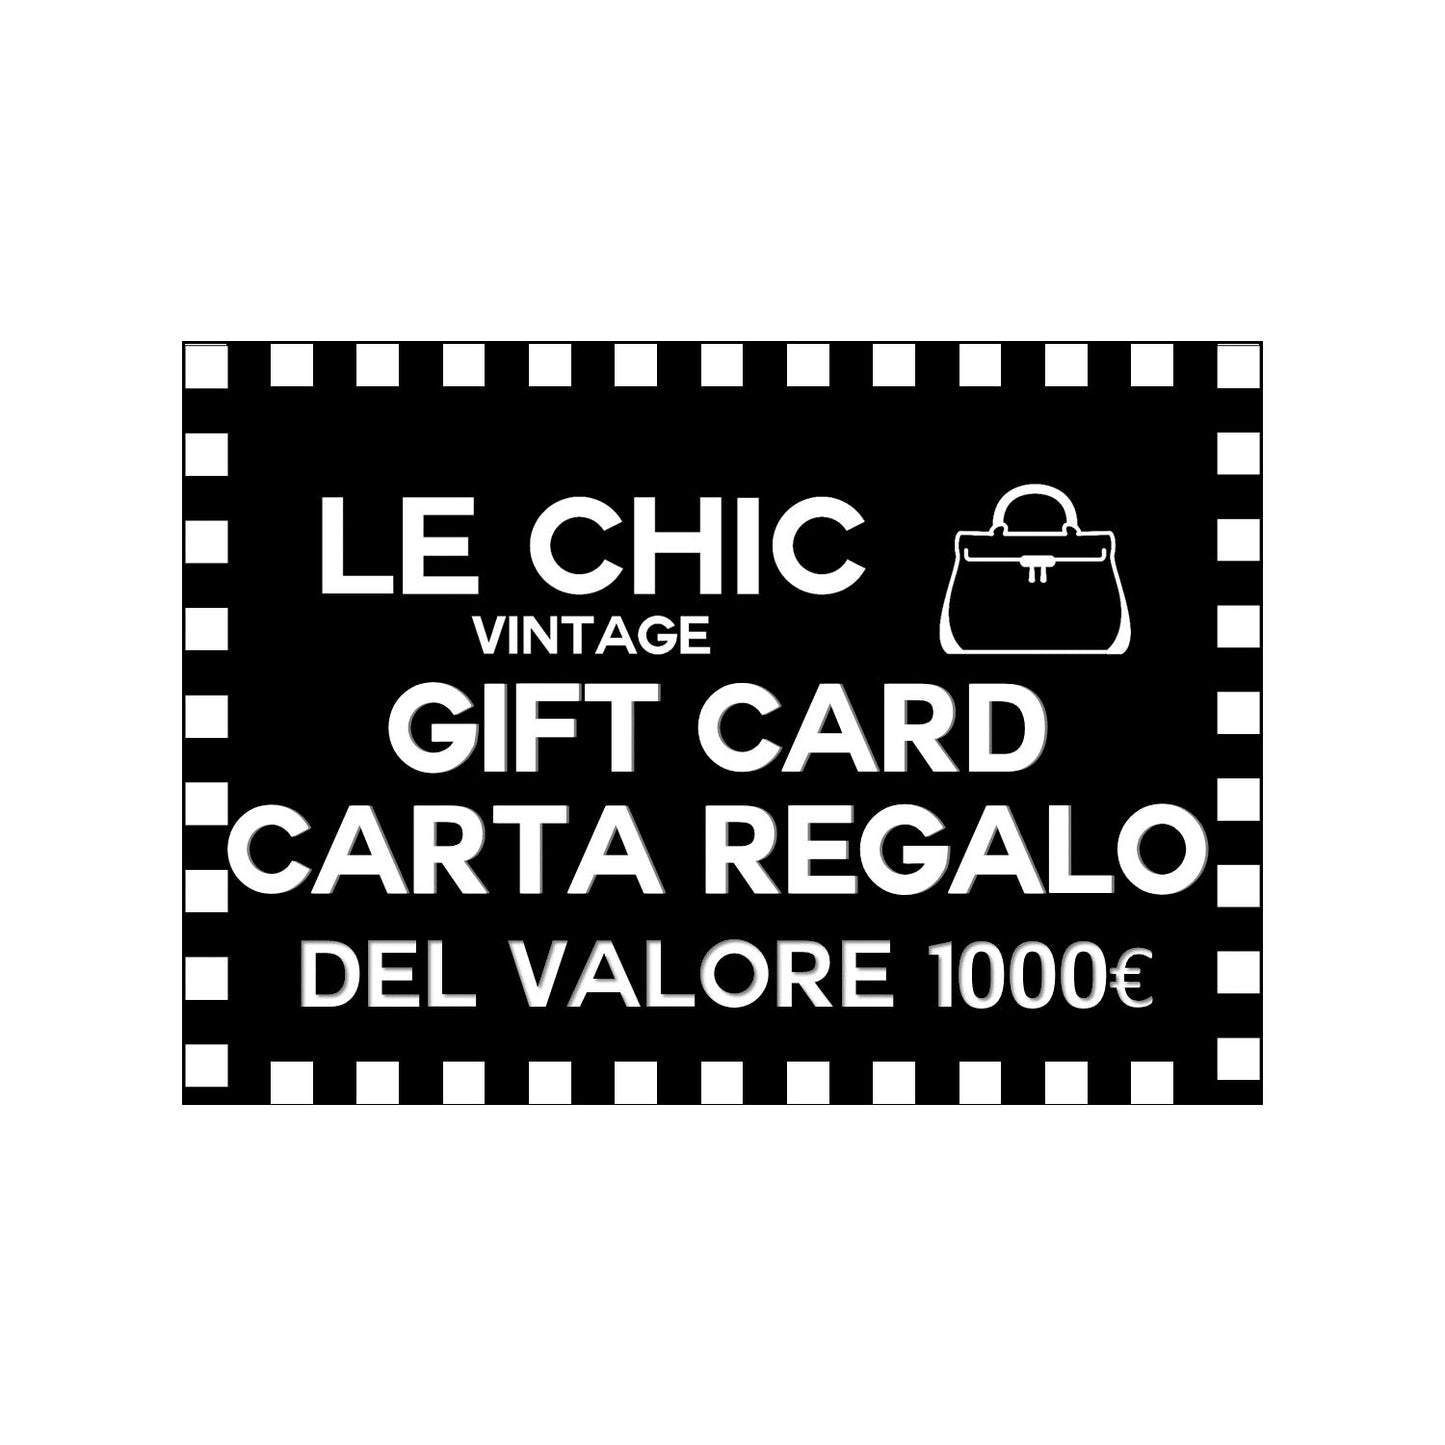 Le Chic Carta Regalo 1000€